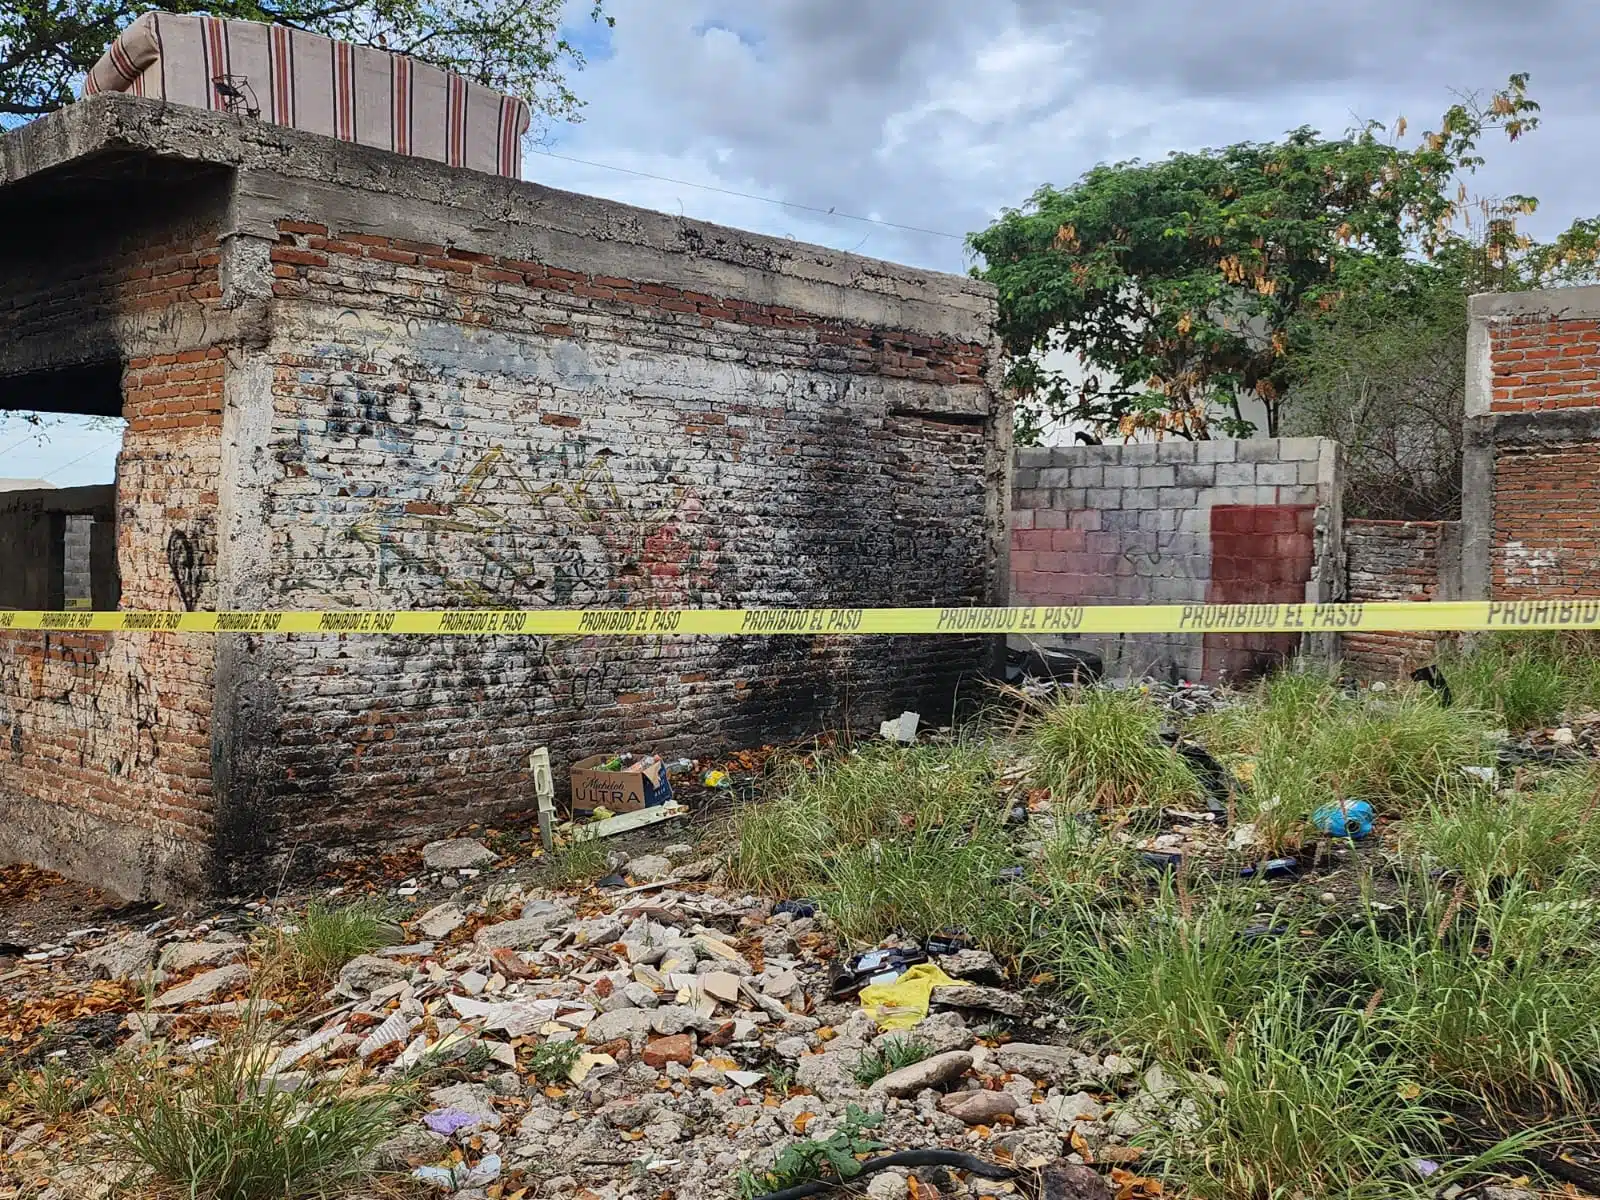 Localizan cadáver carbonizado junto a una casa abandonada en Culiacán